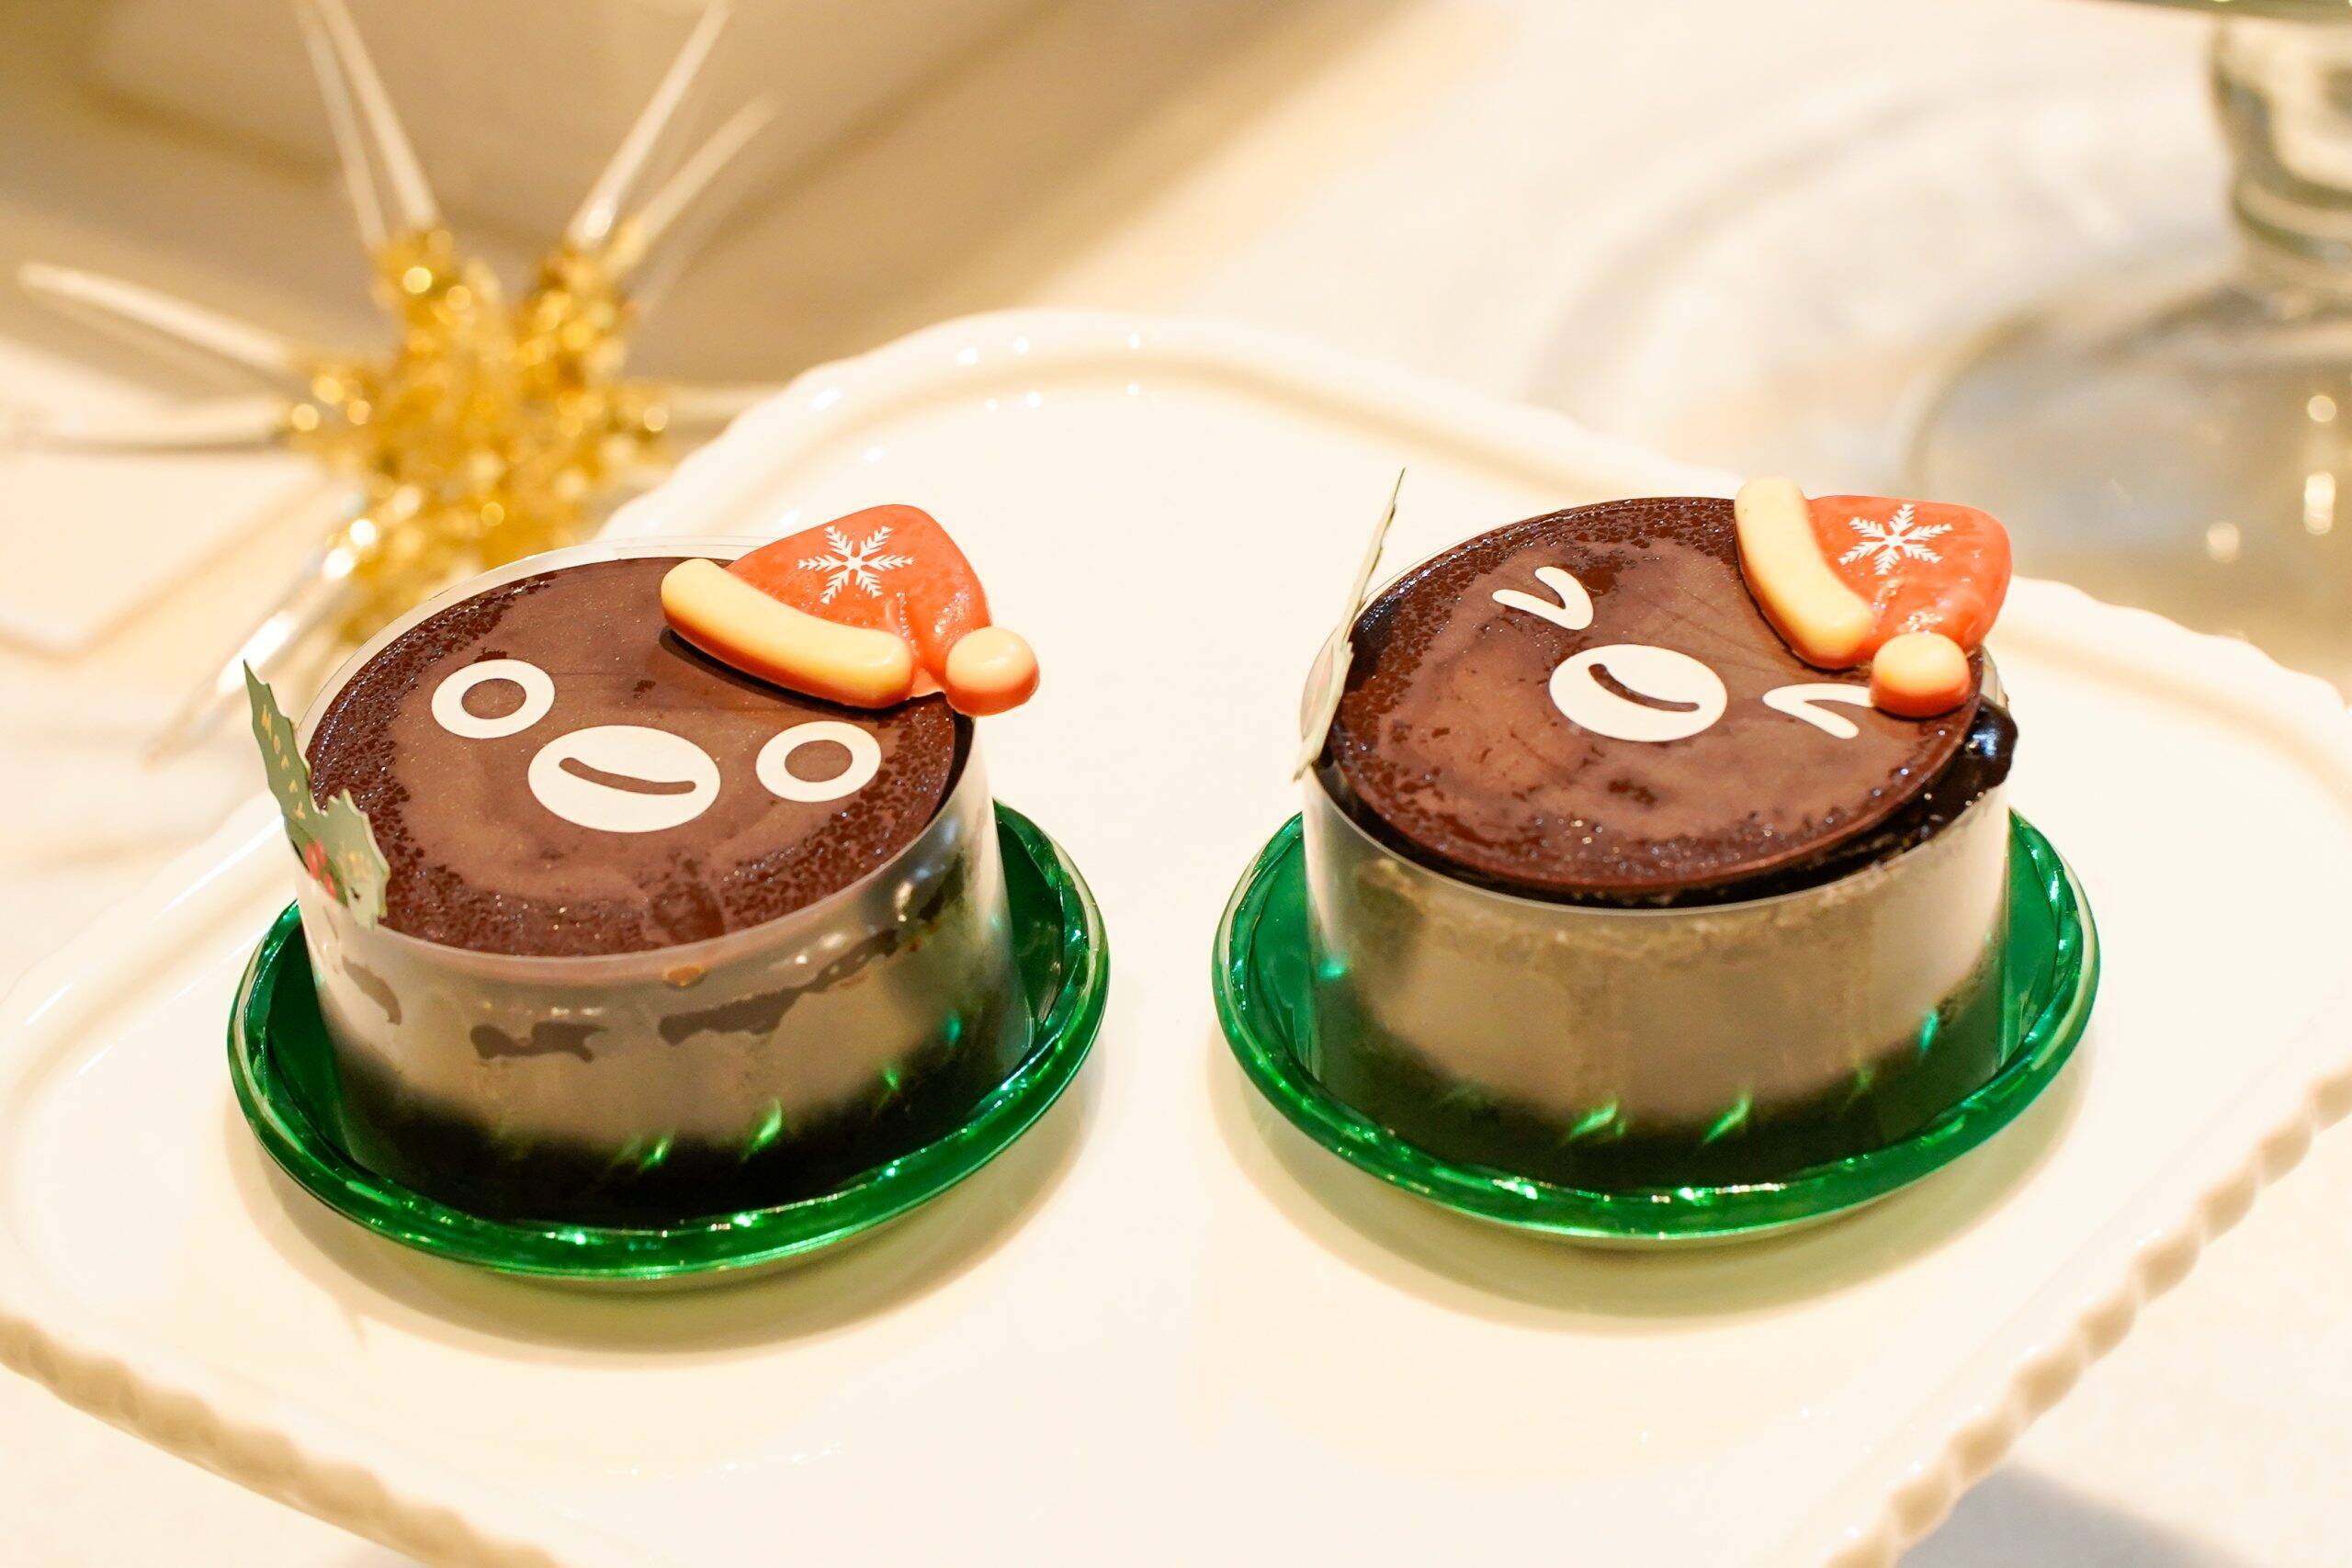 可愛いケーキが盛りだくさん 東京駅 エキュート グランスタ クリスマスキャンペーン 新幹線やsuicaのペンギンデコレーションも 22年10月5日 エキサイトニュース 3 3